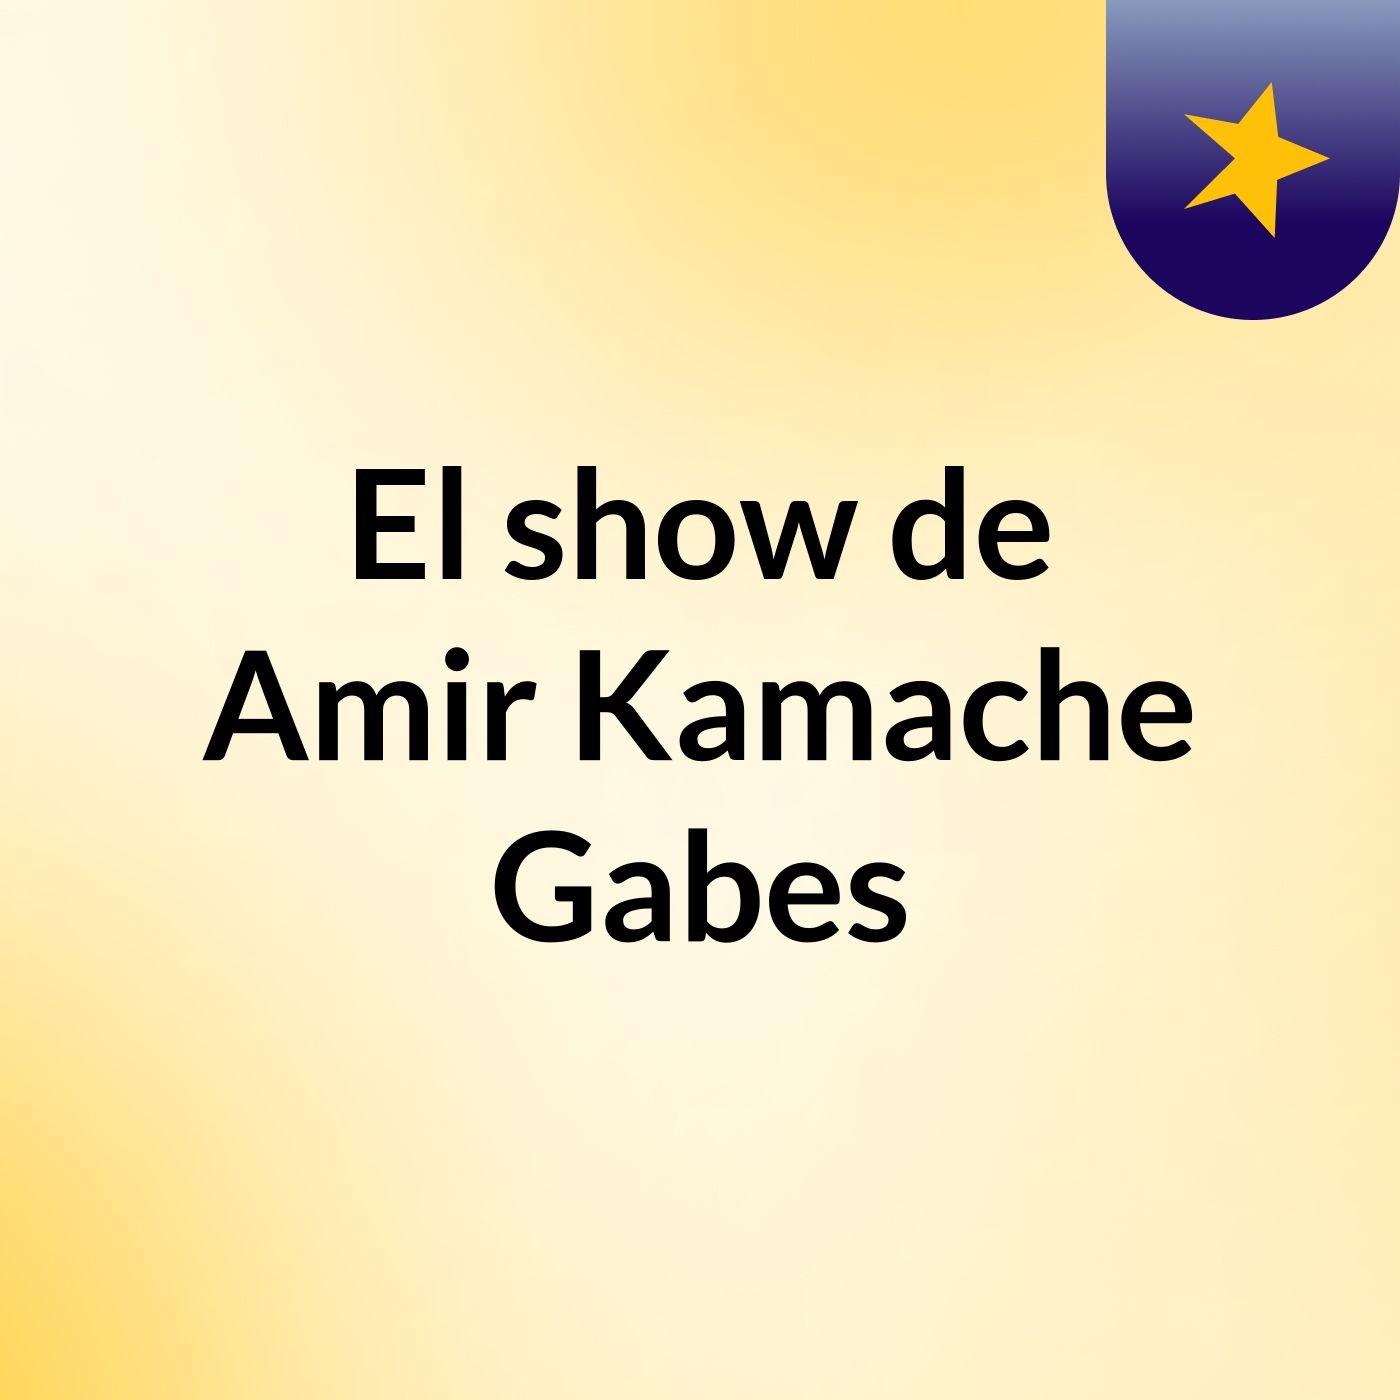 El show de Amir Kamache Gabes